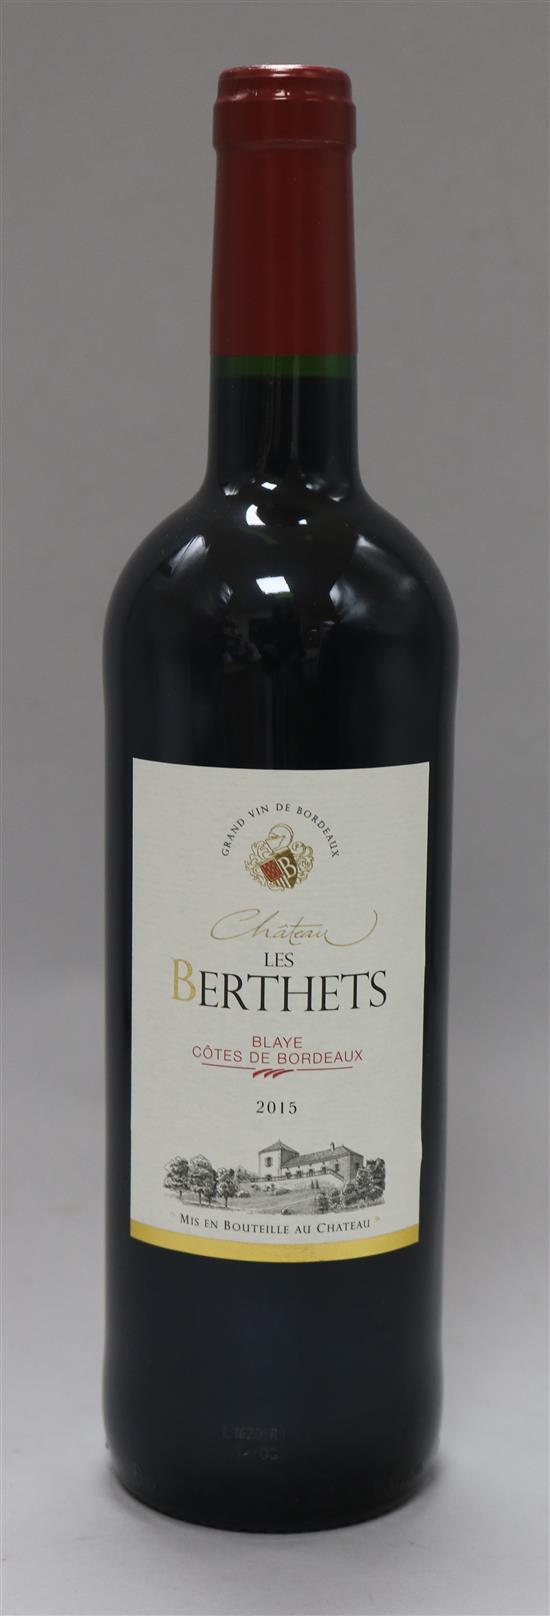 Five bottles Chateau Berlotts Bordeaux 2015